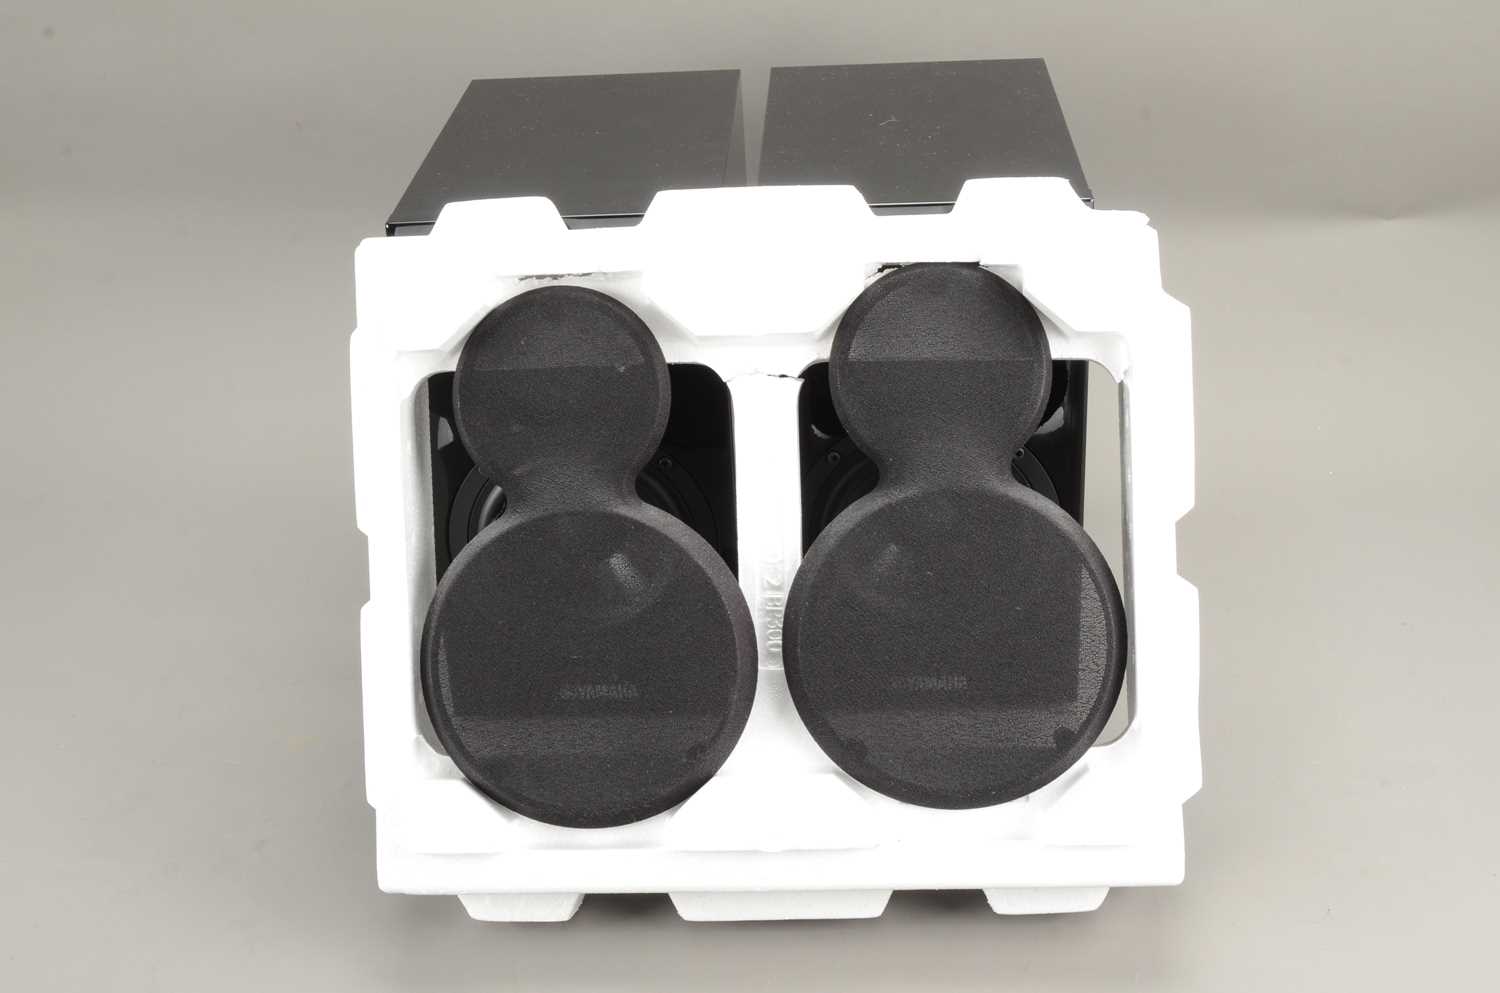 Yamaha Speakers, - Image 5 of 6